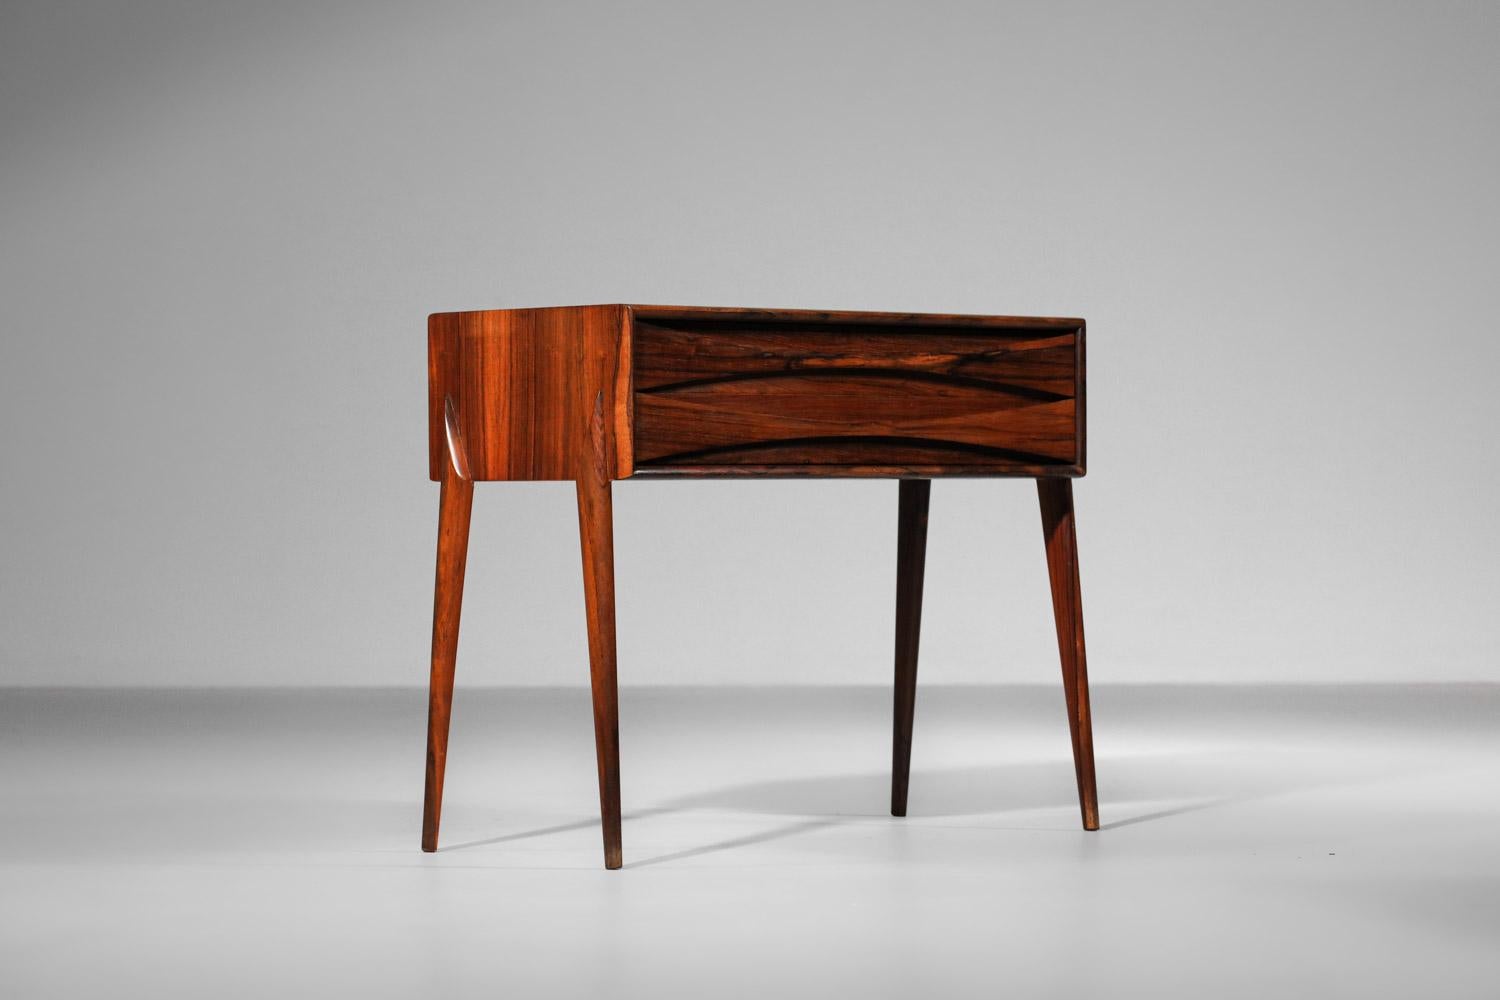 Table de chevet des années 60 du designer danois Arne Vodder. Cette table de chevet est entièrement en palissandre de Rio massif et plaqué. Les deux tiroirs sont magnifiquement finis avec des poignées en bois sur toute la longueur. Un design sobre